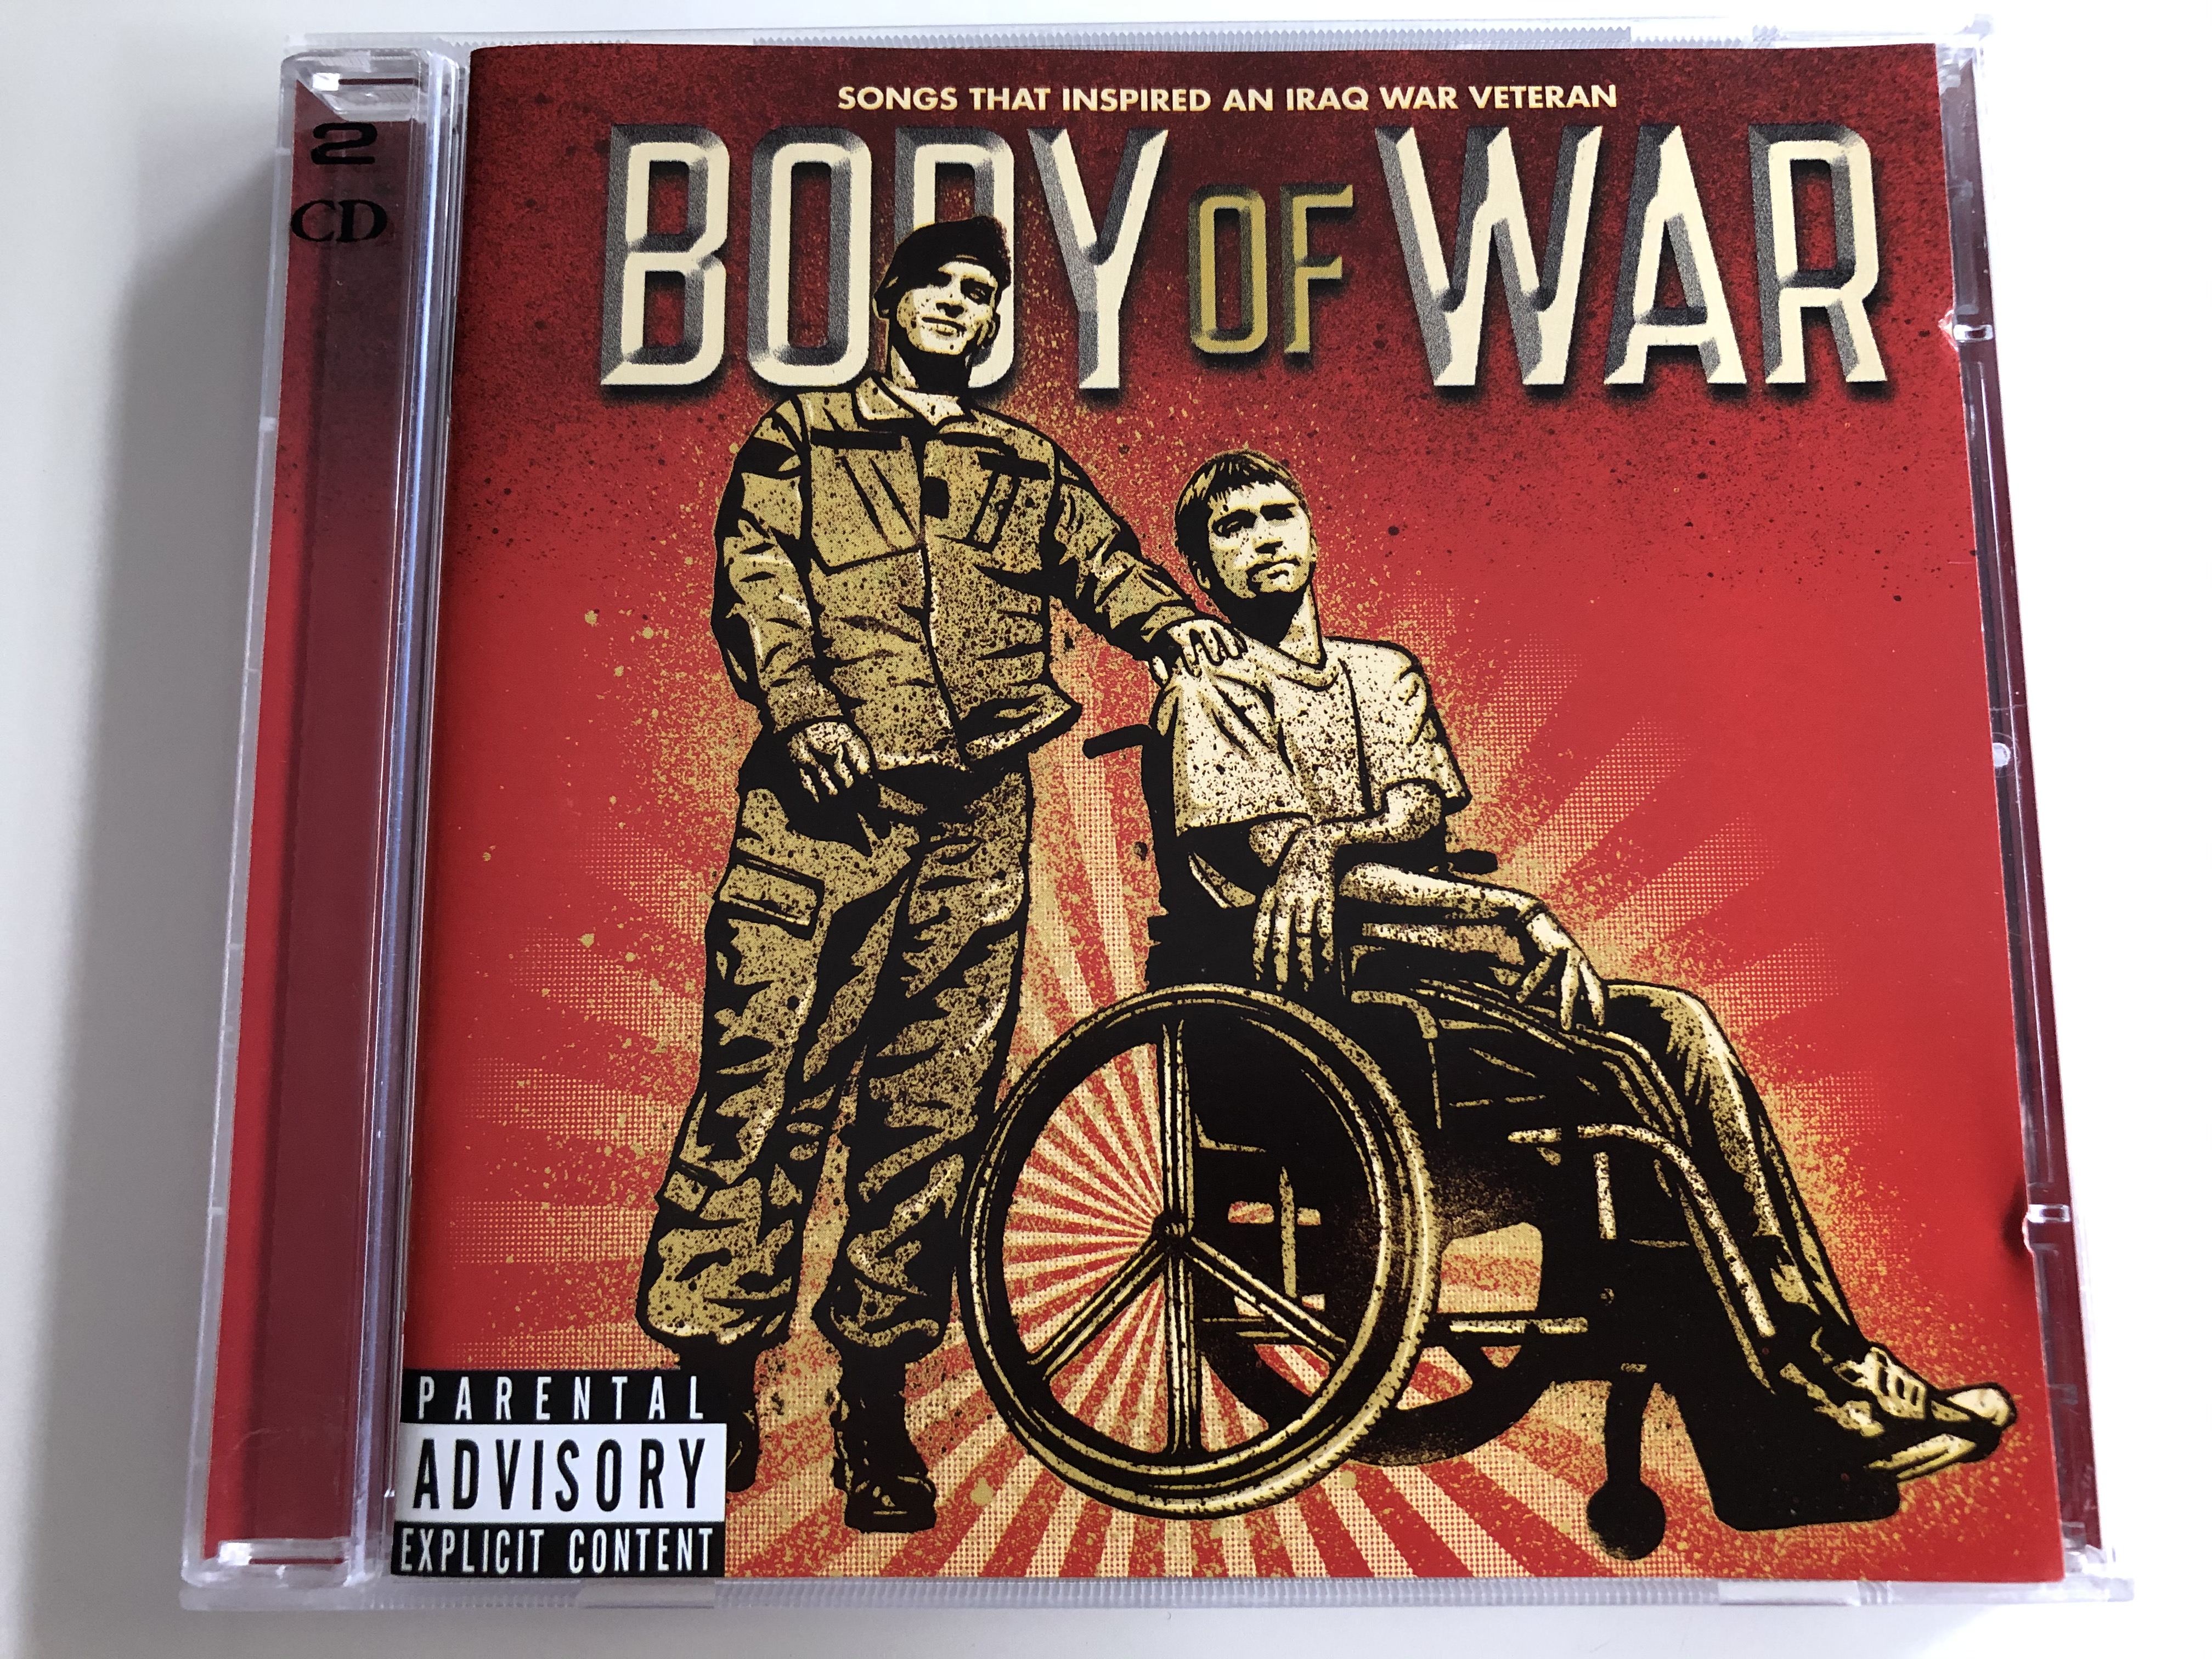 body-of-war-songs-that-inspired-an-iraq-war-veteran-sire-2x-audio-cd-2008-9362-49079-2-1-.jpg